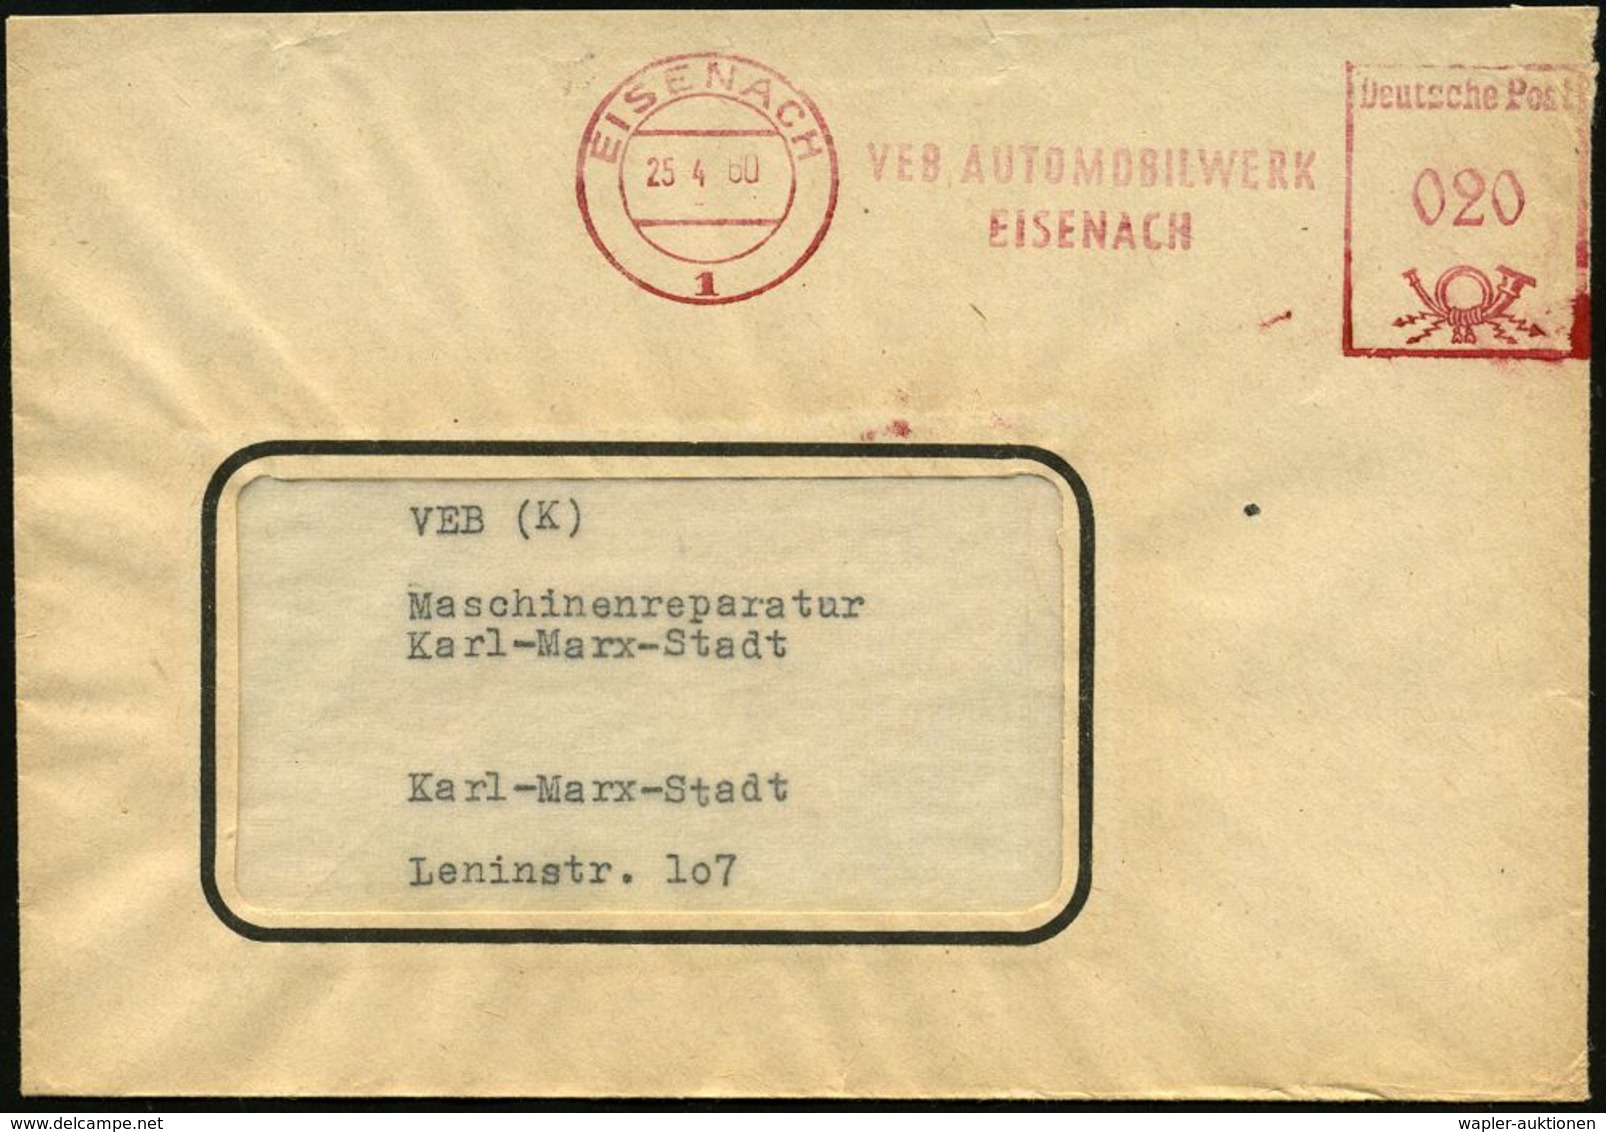 AUTOHERSTELLER D.D.R. : EISENACH/ 1/ VEB AUTOMOBILWERK/ EISENACH 1960 (25.4.) AFS = Vormals BMW Und EMW (u. Ex SAG Awtov - Autos